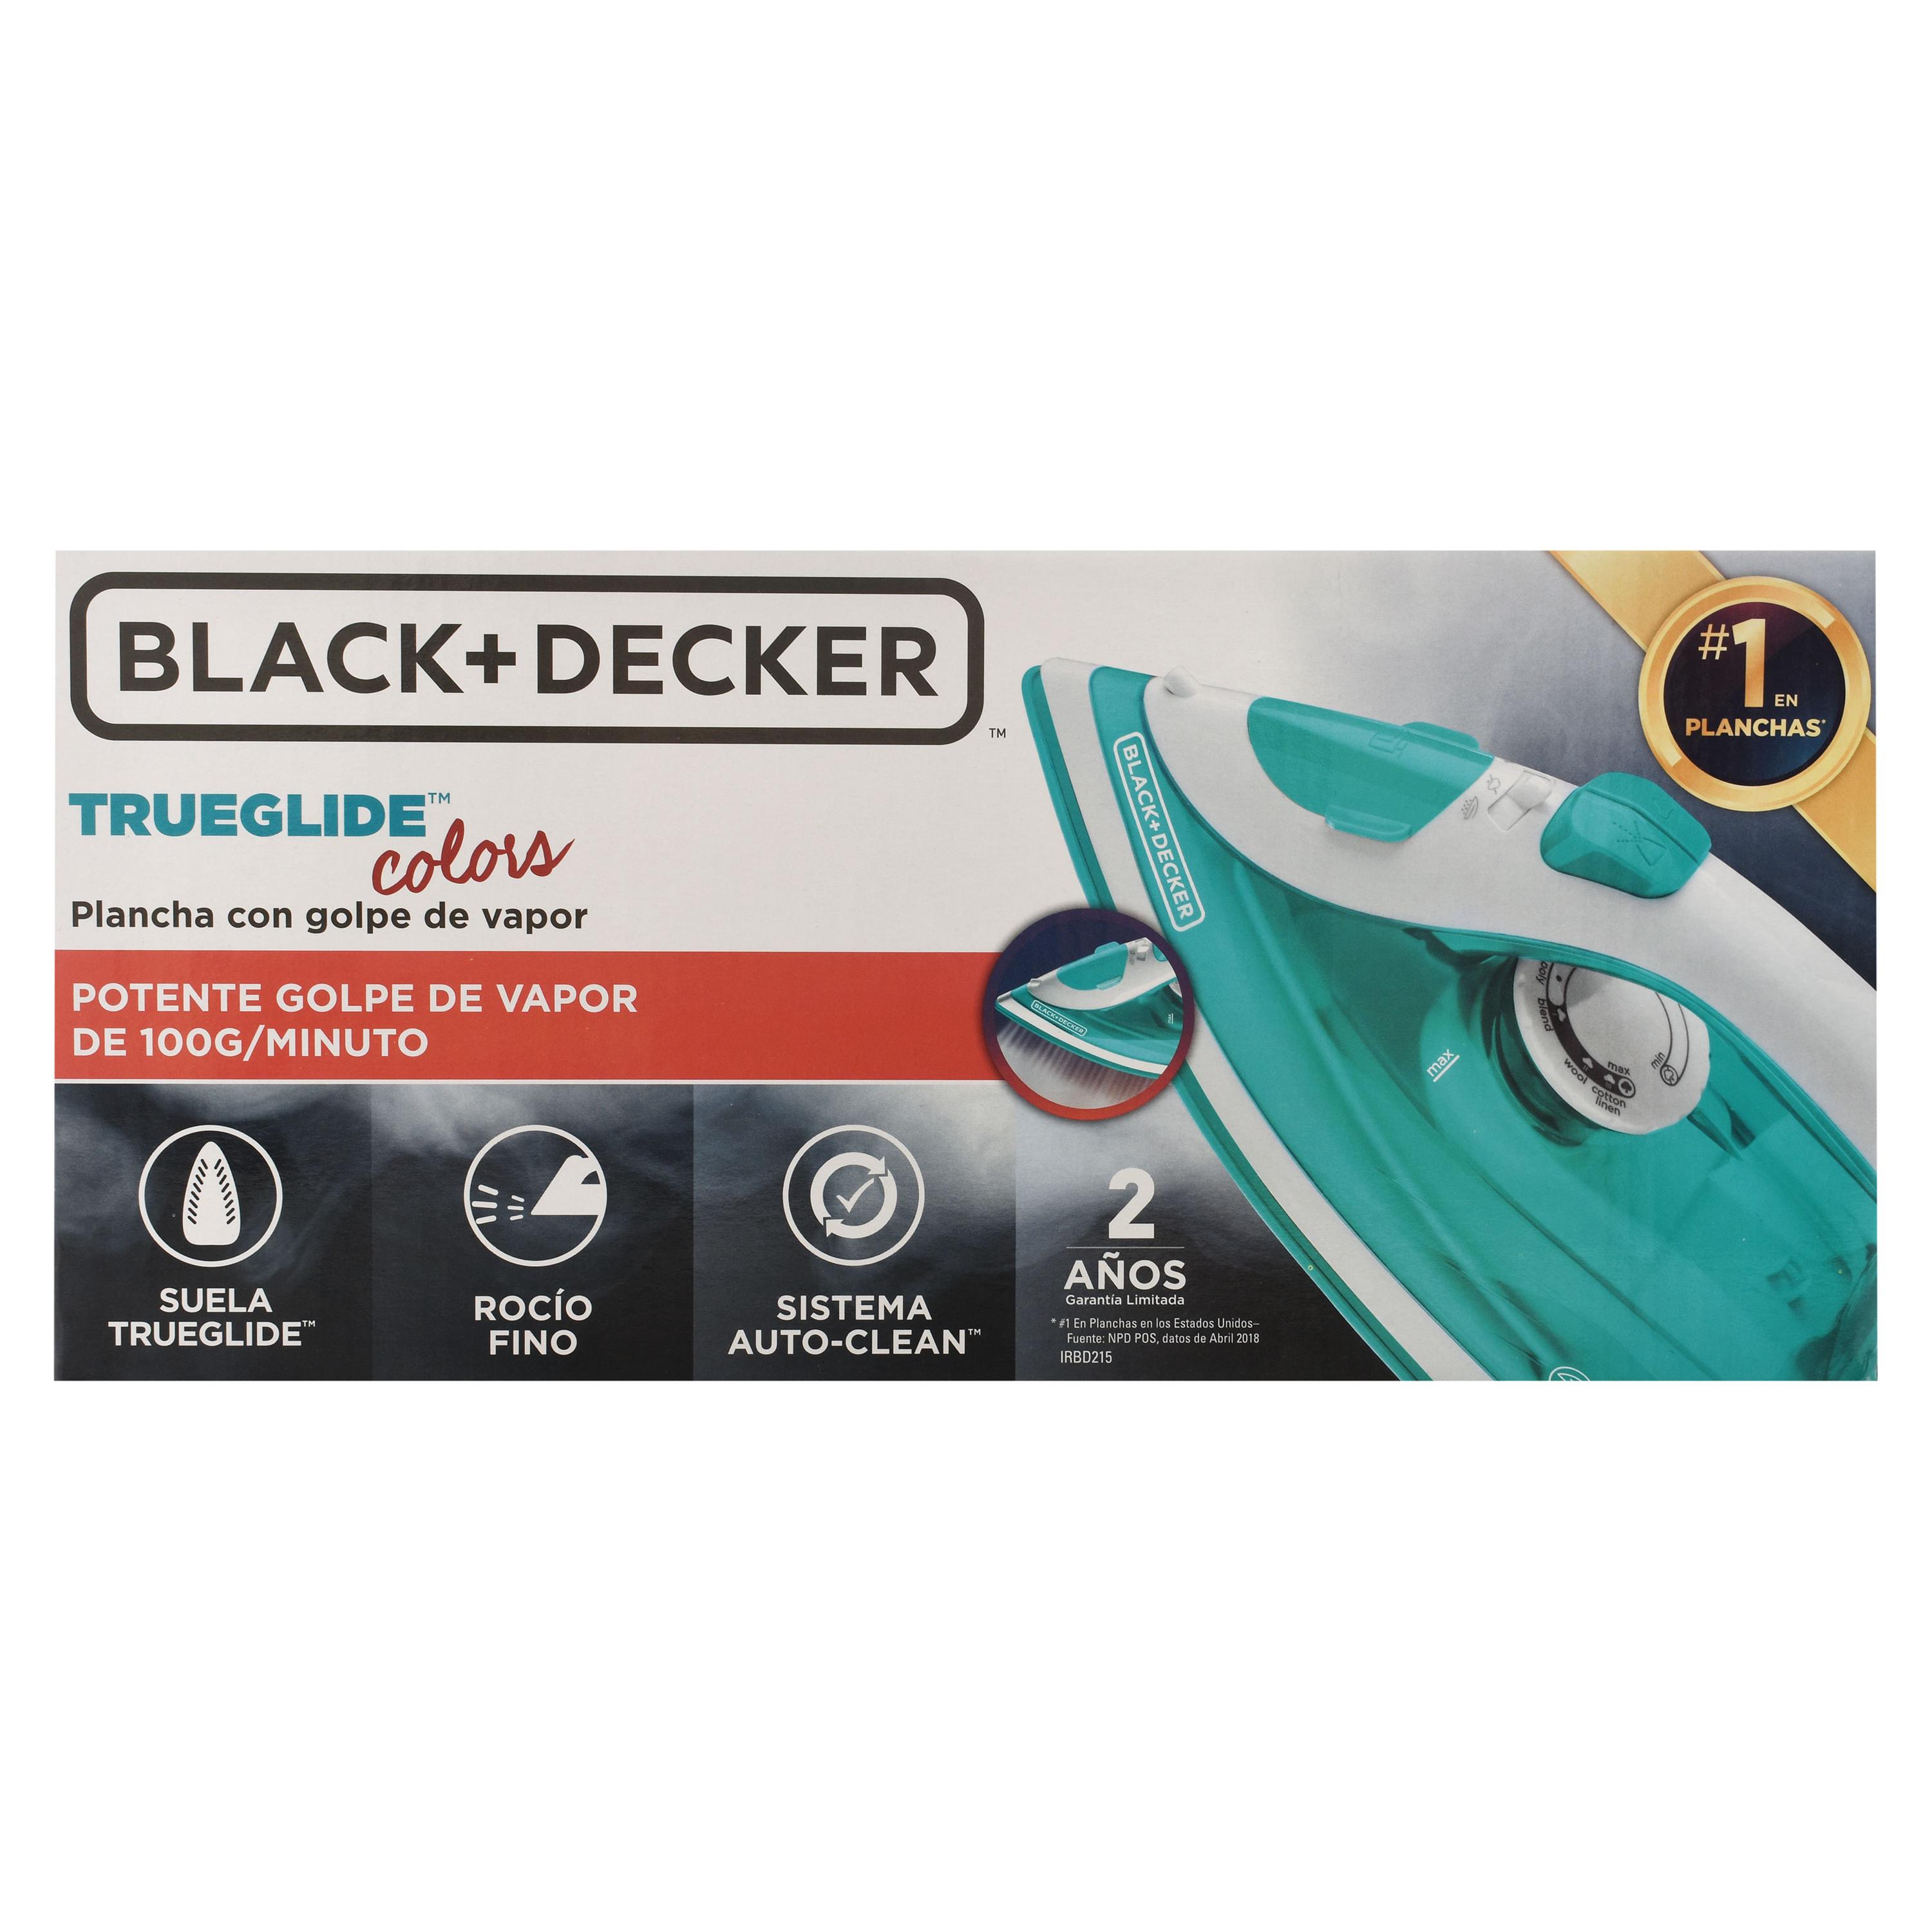 Comprar Plancha de Vapor BLACK+DECKER® TrueGlide Colors con Golpe